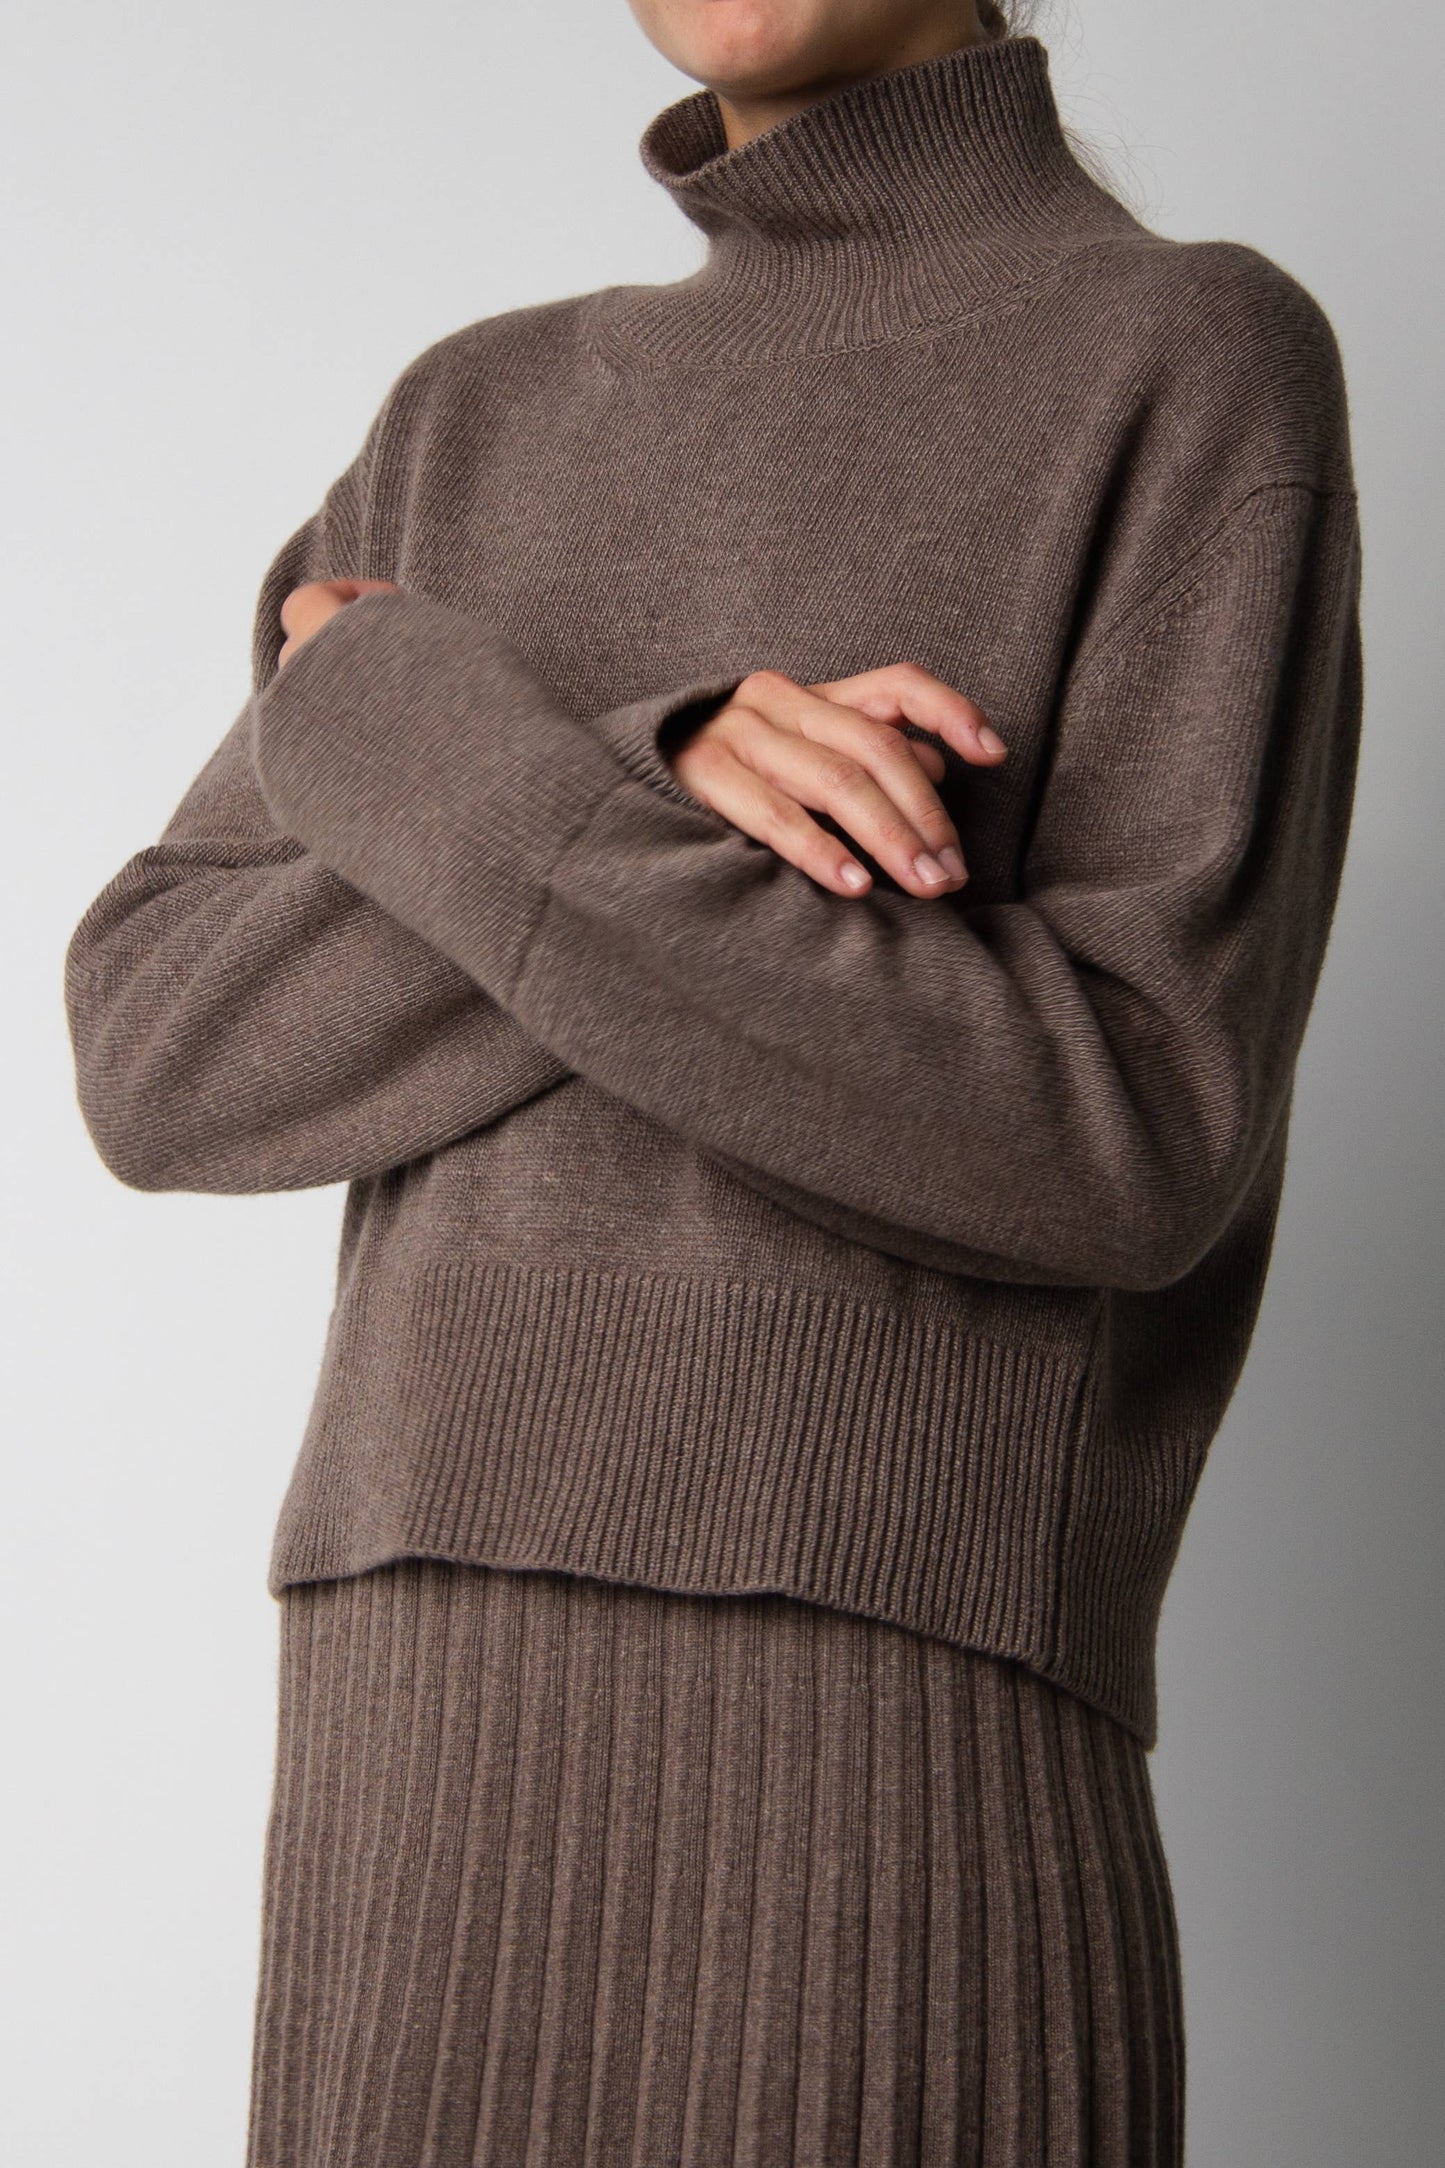 LÈMME - Cashmere Mix Turtleneck Sweater: M / Beige